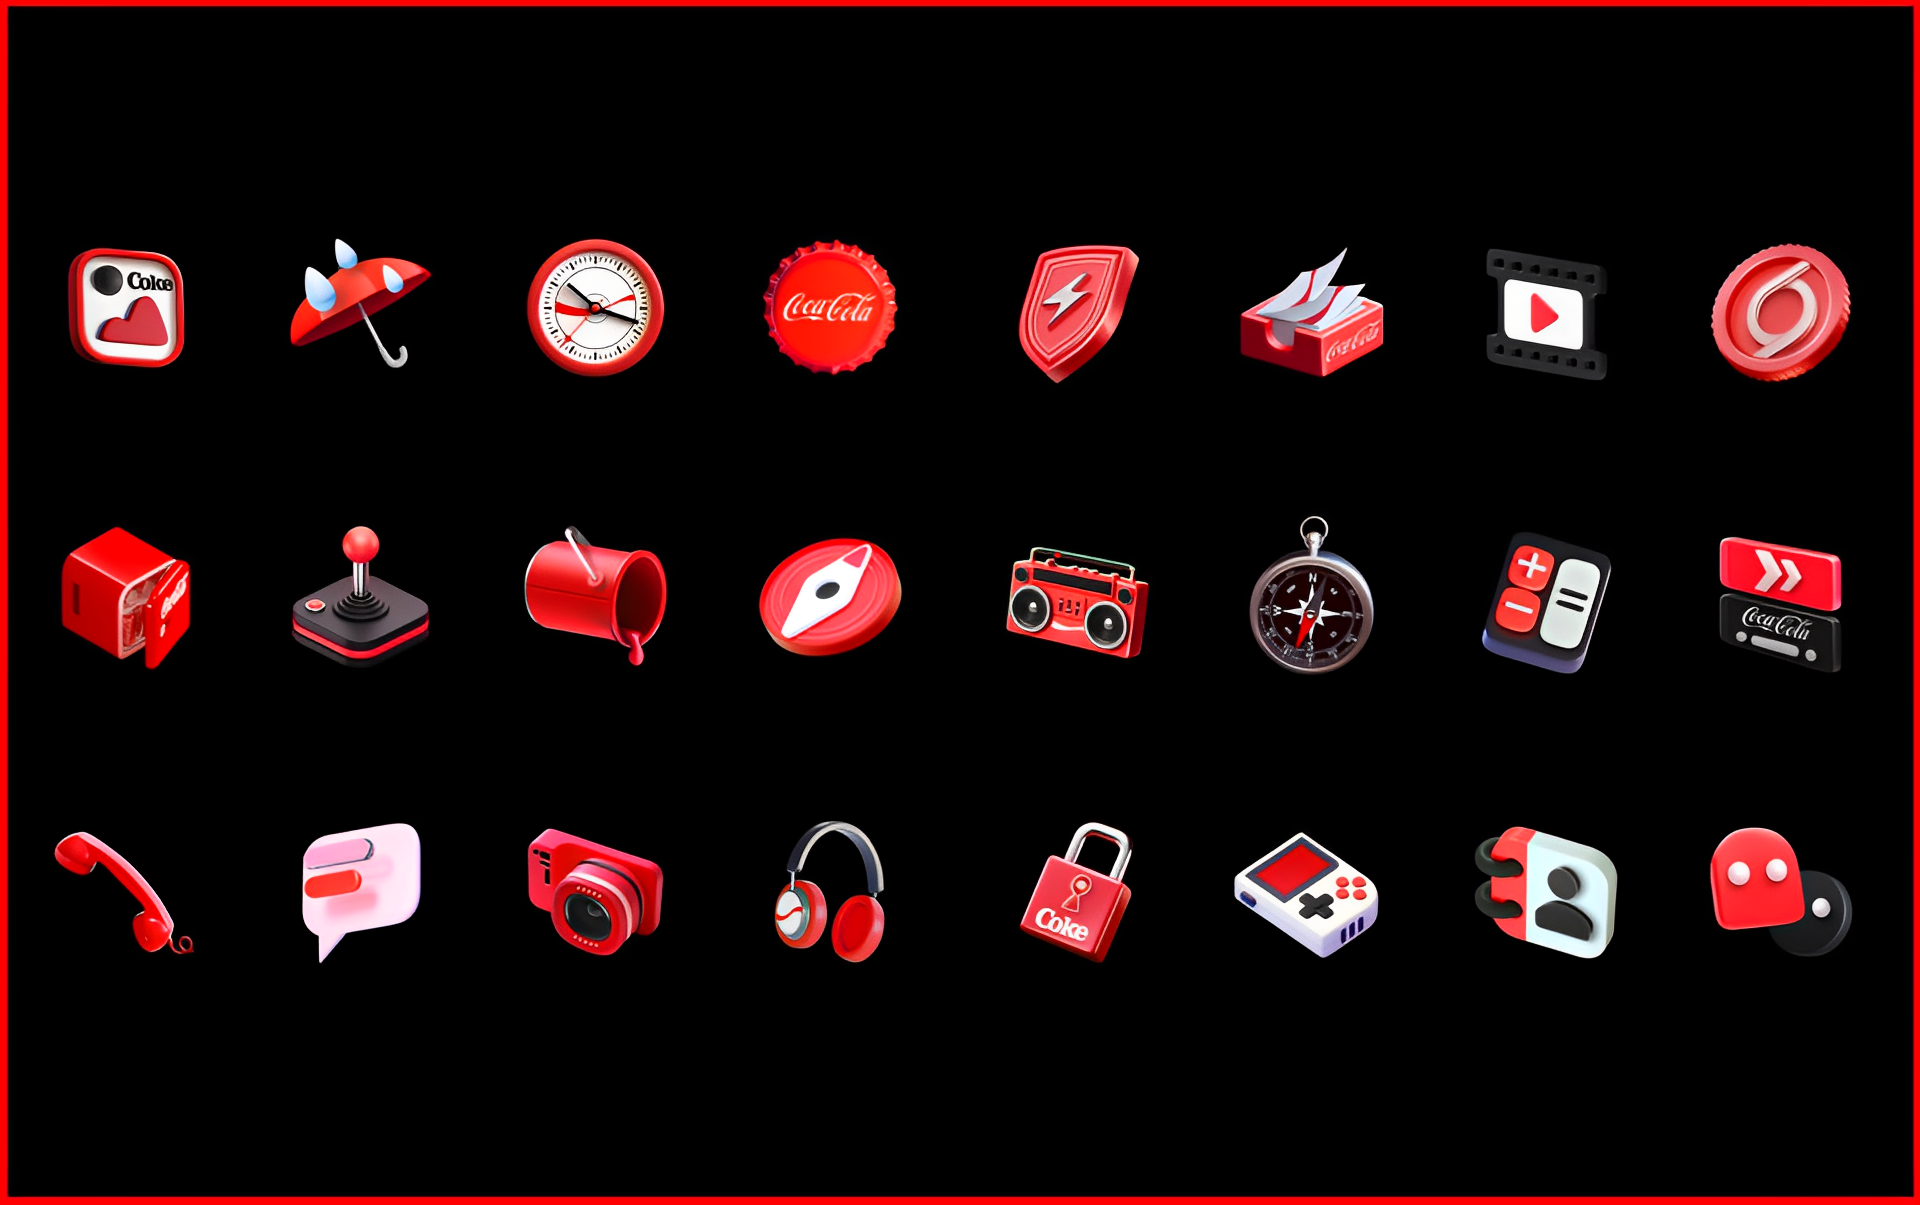 Standaardpictogrammen in de Coke Phone worden gemengd met Coca-Cola-thema's